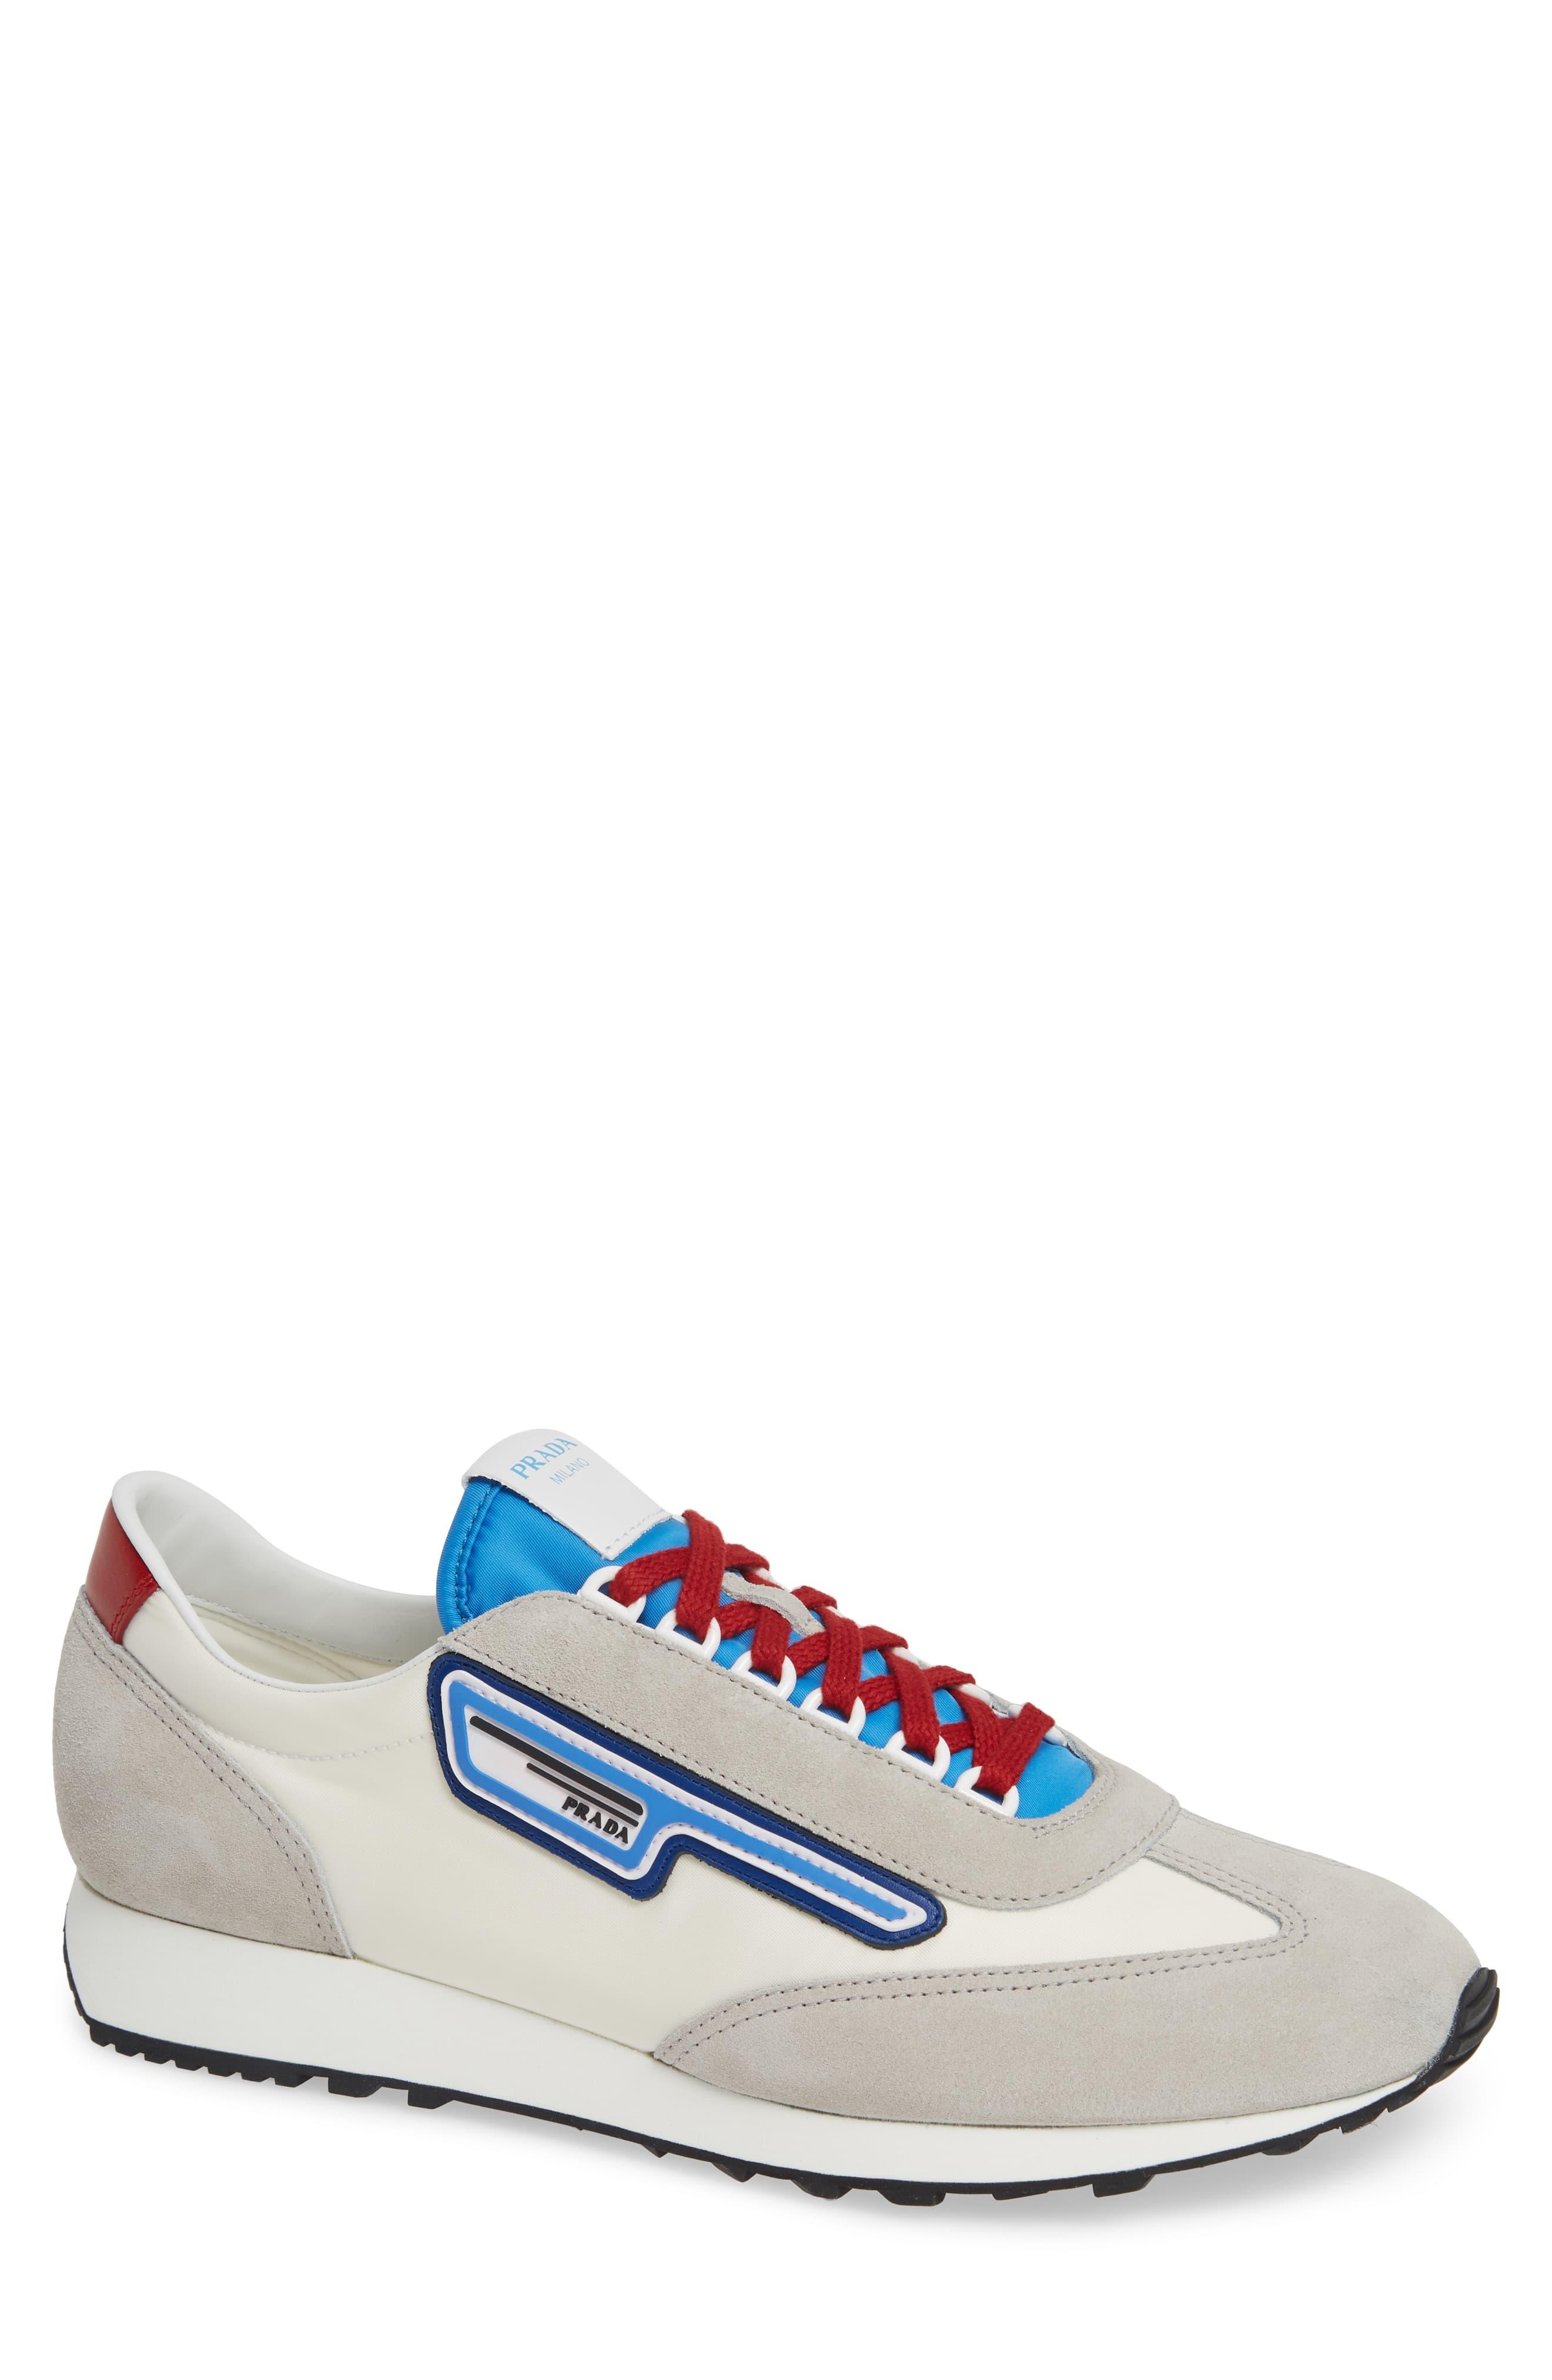 Prada Retro Trainer Sneaker in White/ Blue (Blue) for Men - Lyst